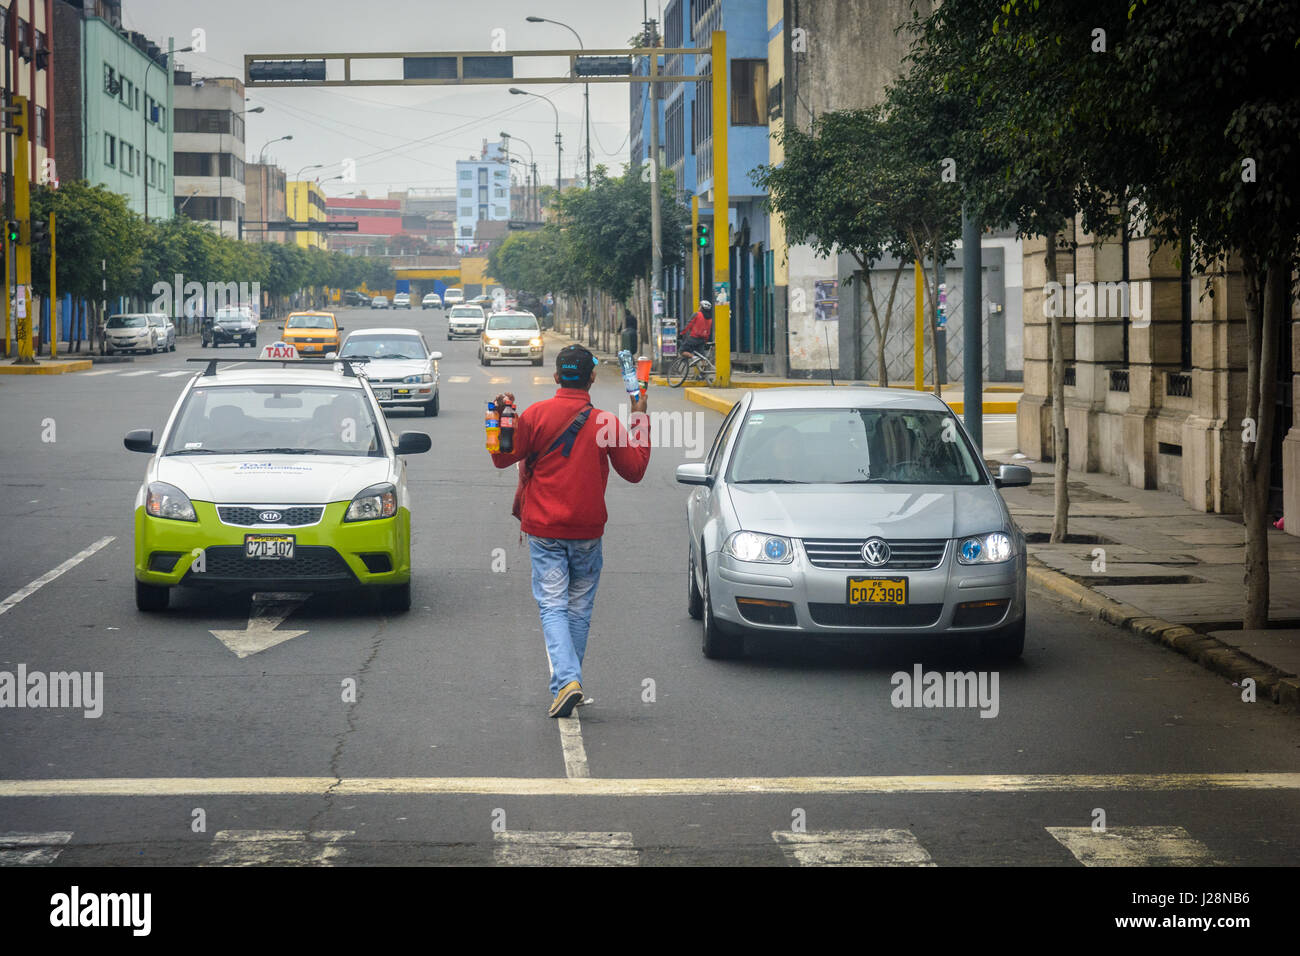 Peru, Lima, Street scenes in Lima, capital of Peru Stock Photo